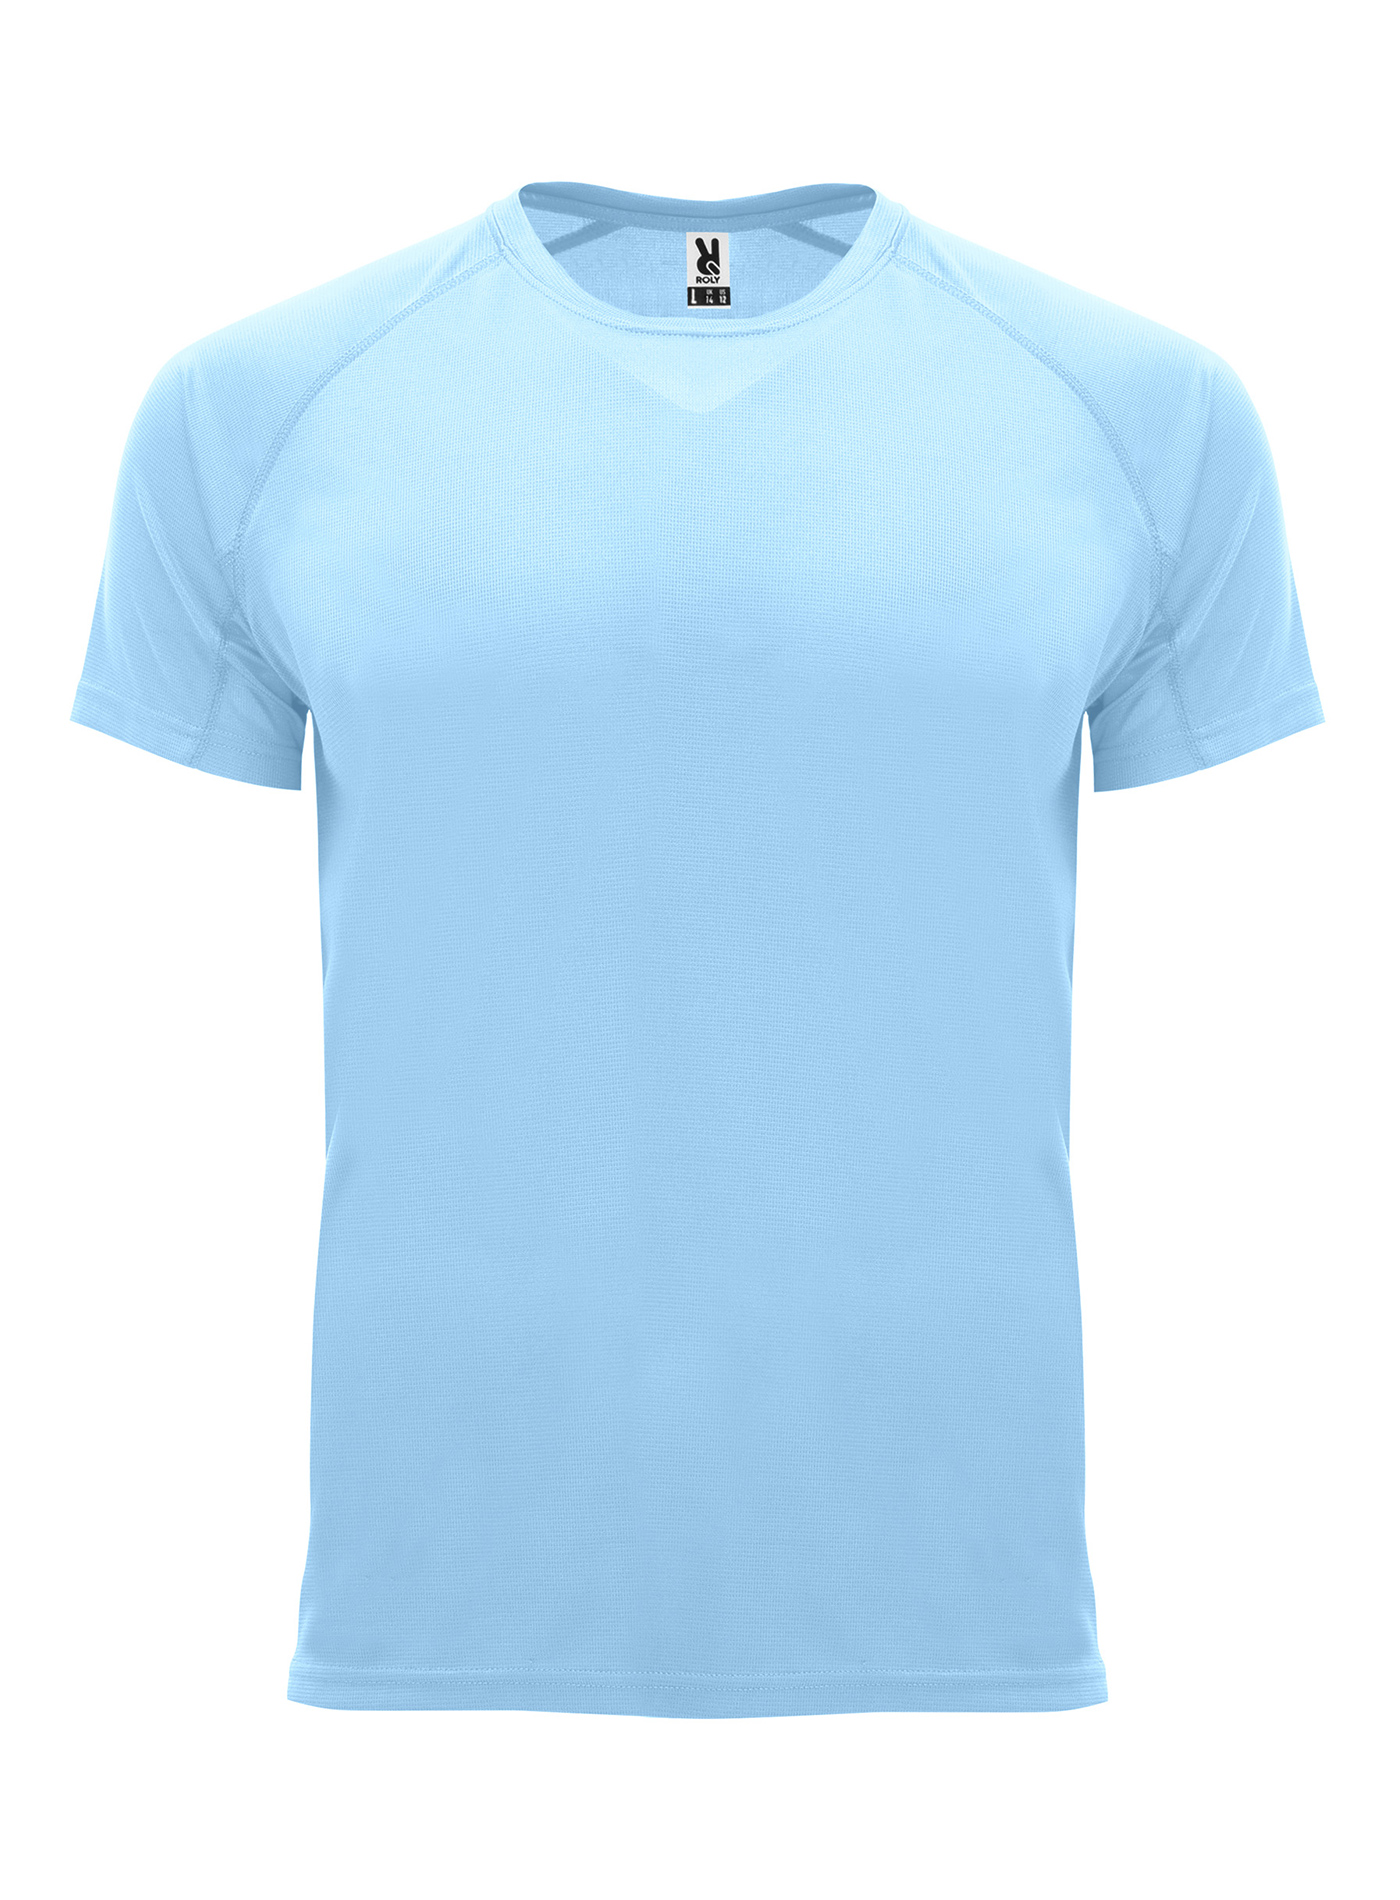 Pánské sportovní tričko Roly Bahrain - Blankytně modrá M